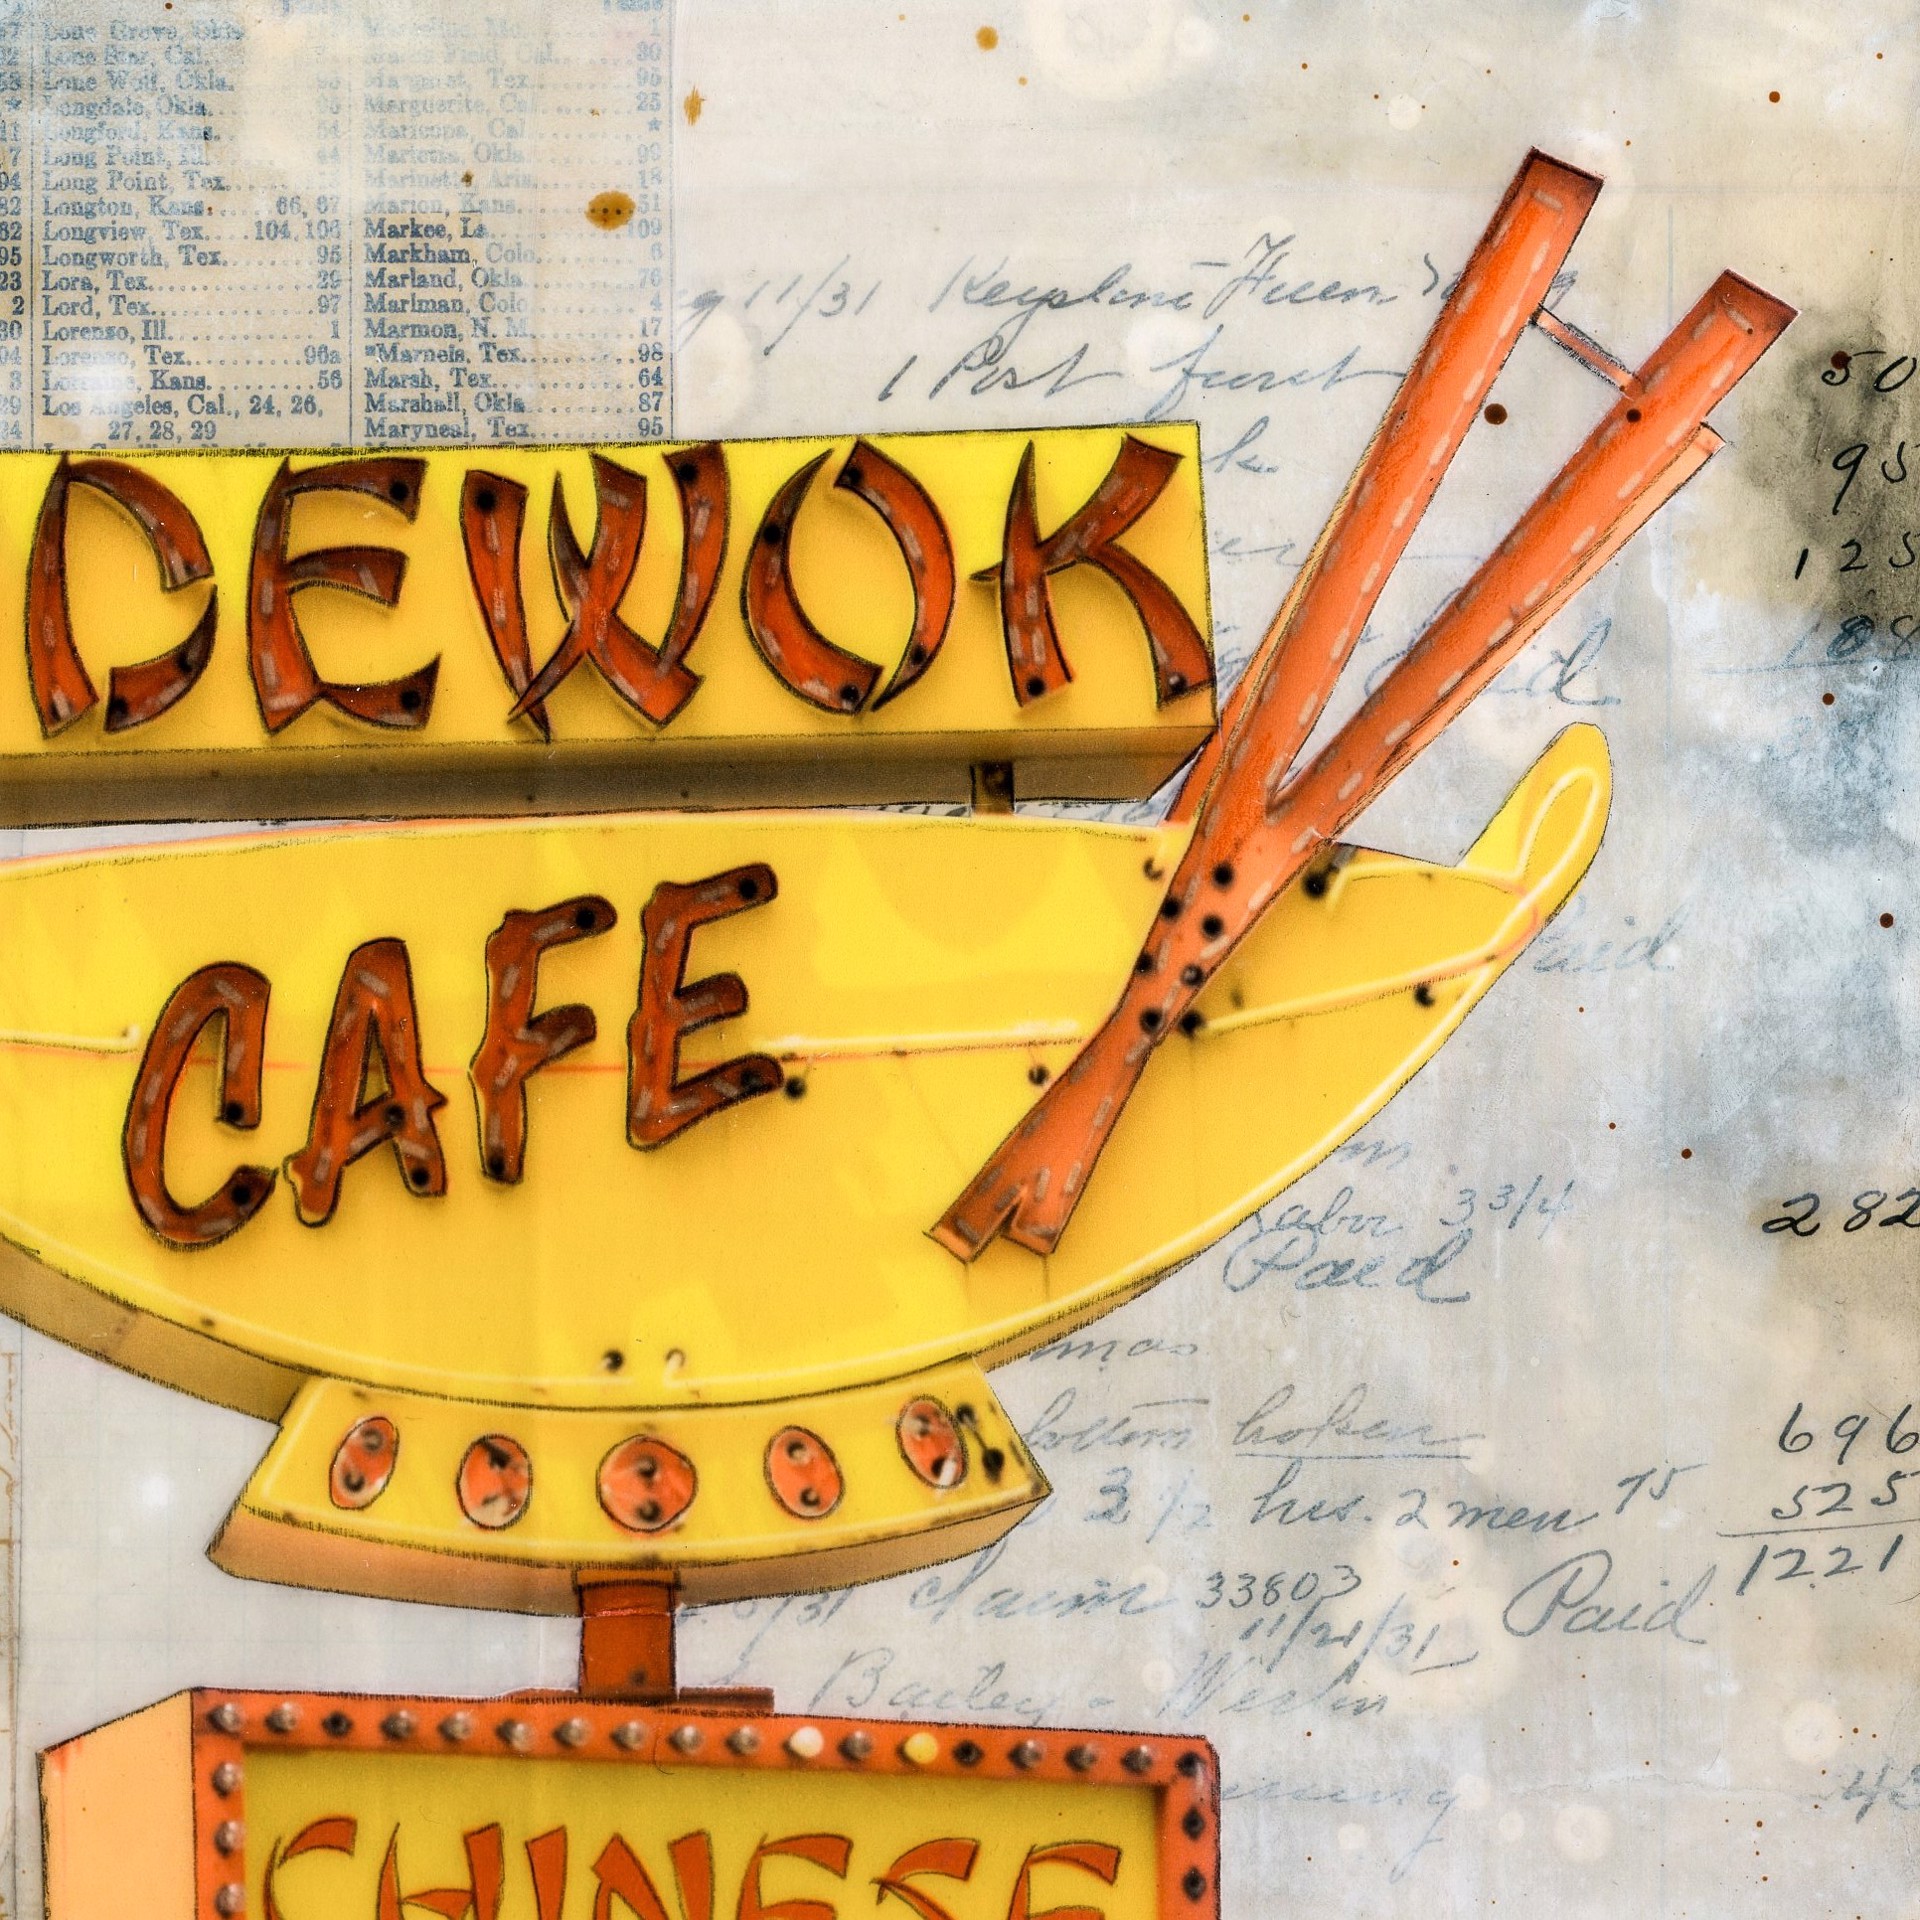 Sidewok Cafe by JC Spock